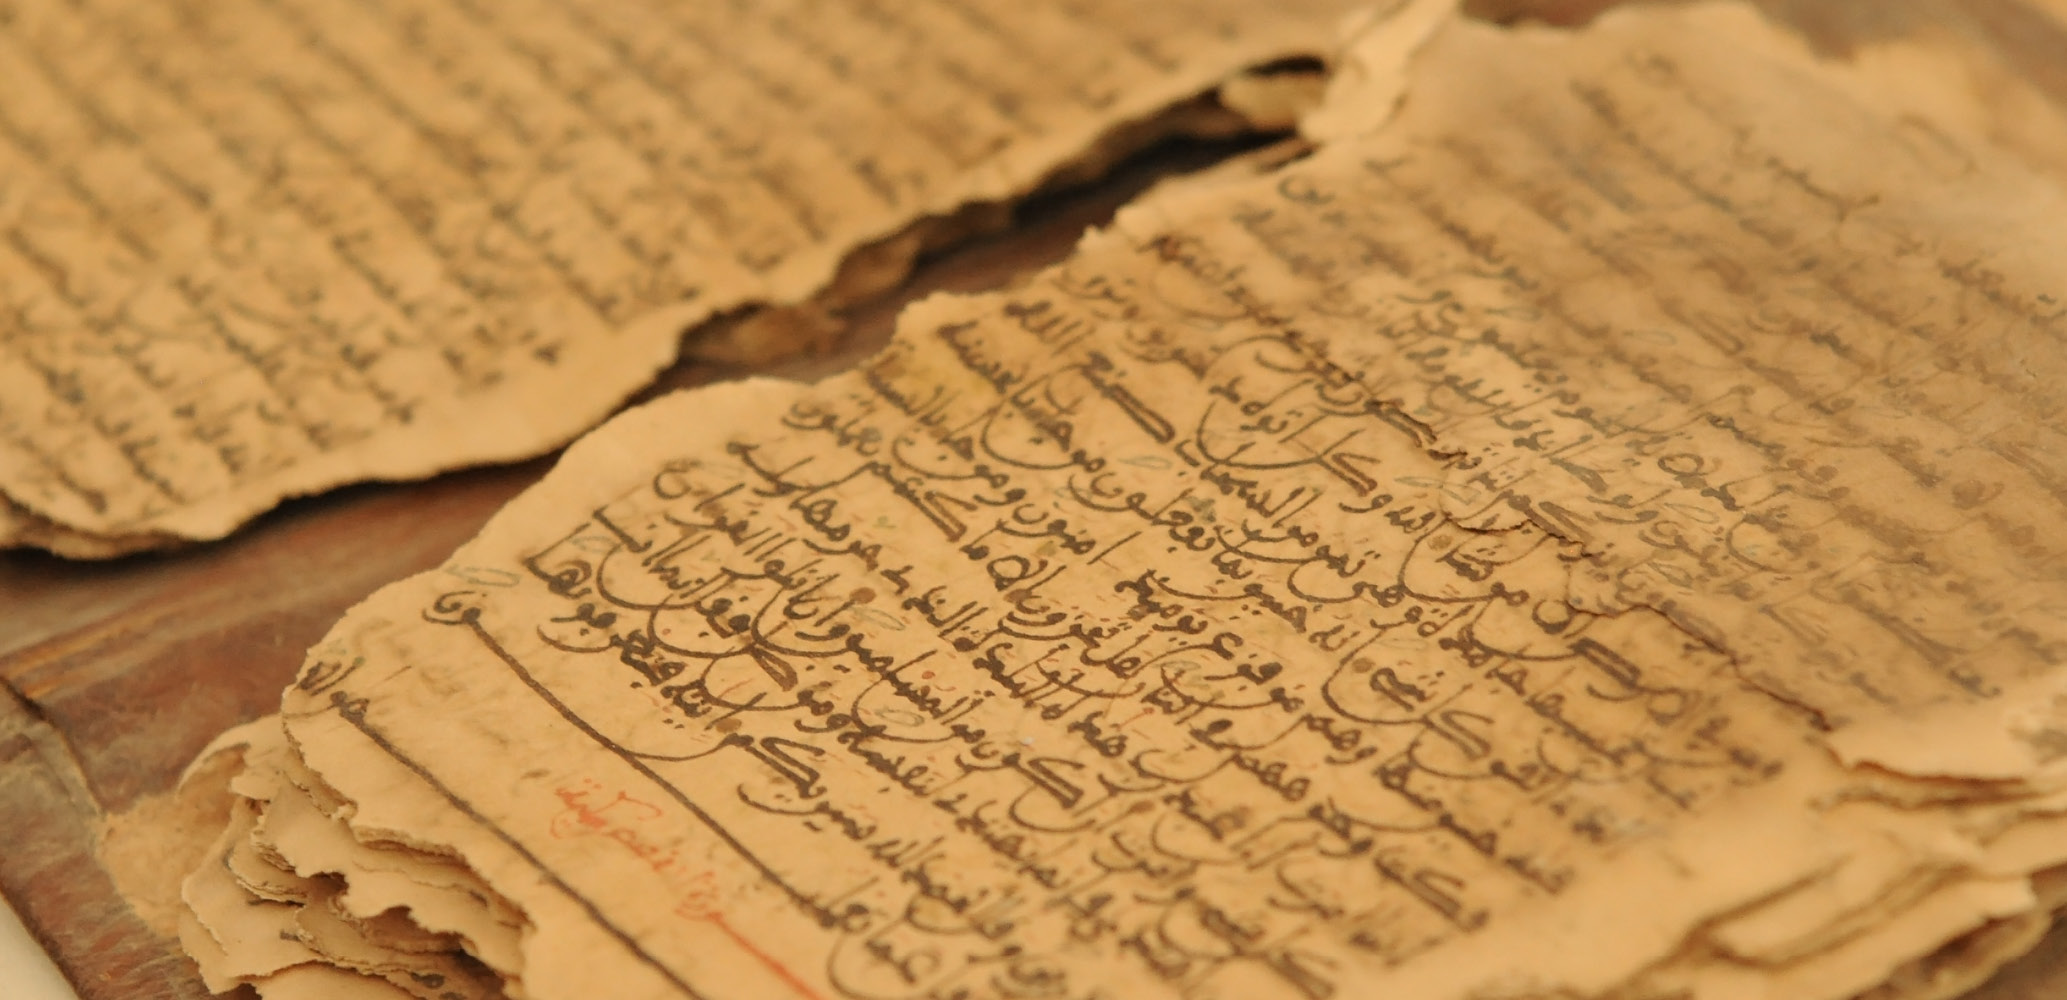 פרשנות קראית בערבית-יהודית: עיונים במדף נשכח בארון הספרים היהודי